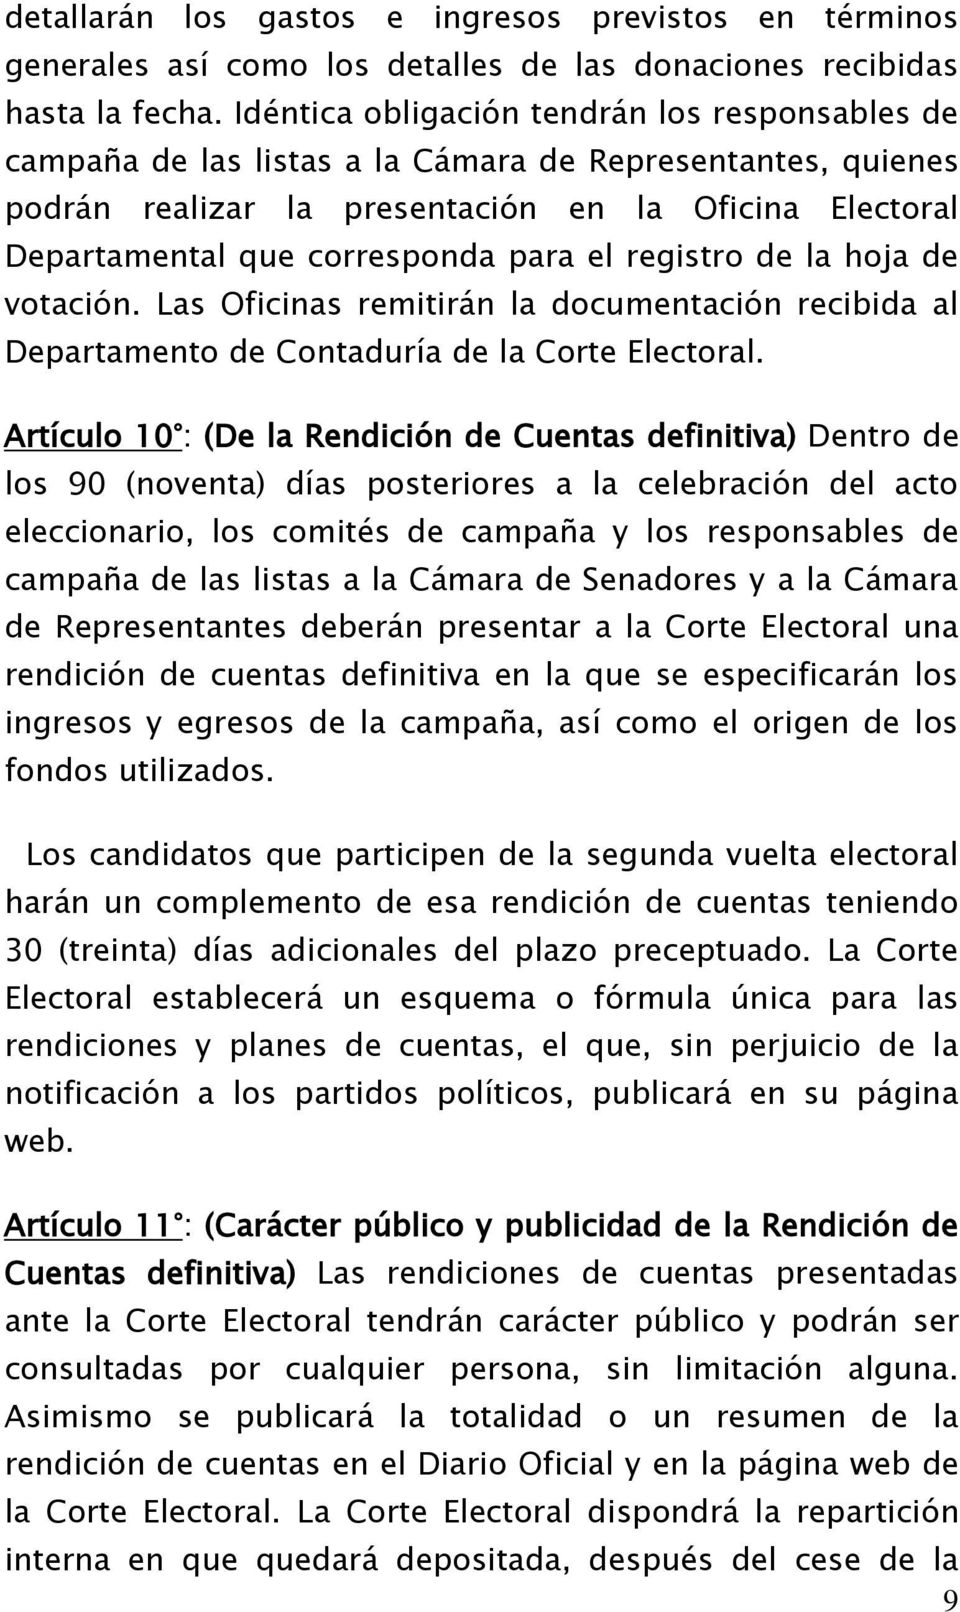 el registro de la hoja de votación. Las Oficinas remitirán la documentación recibida al Departamento de Contaduría de la Corte Electoral.